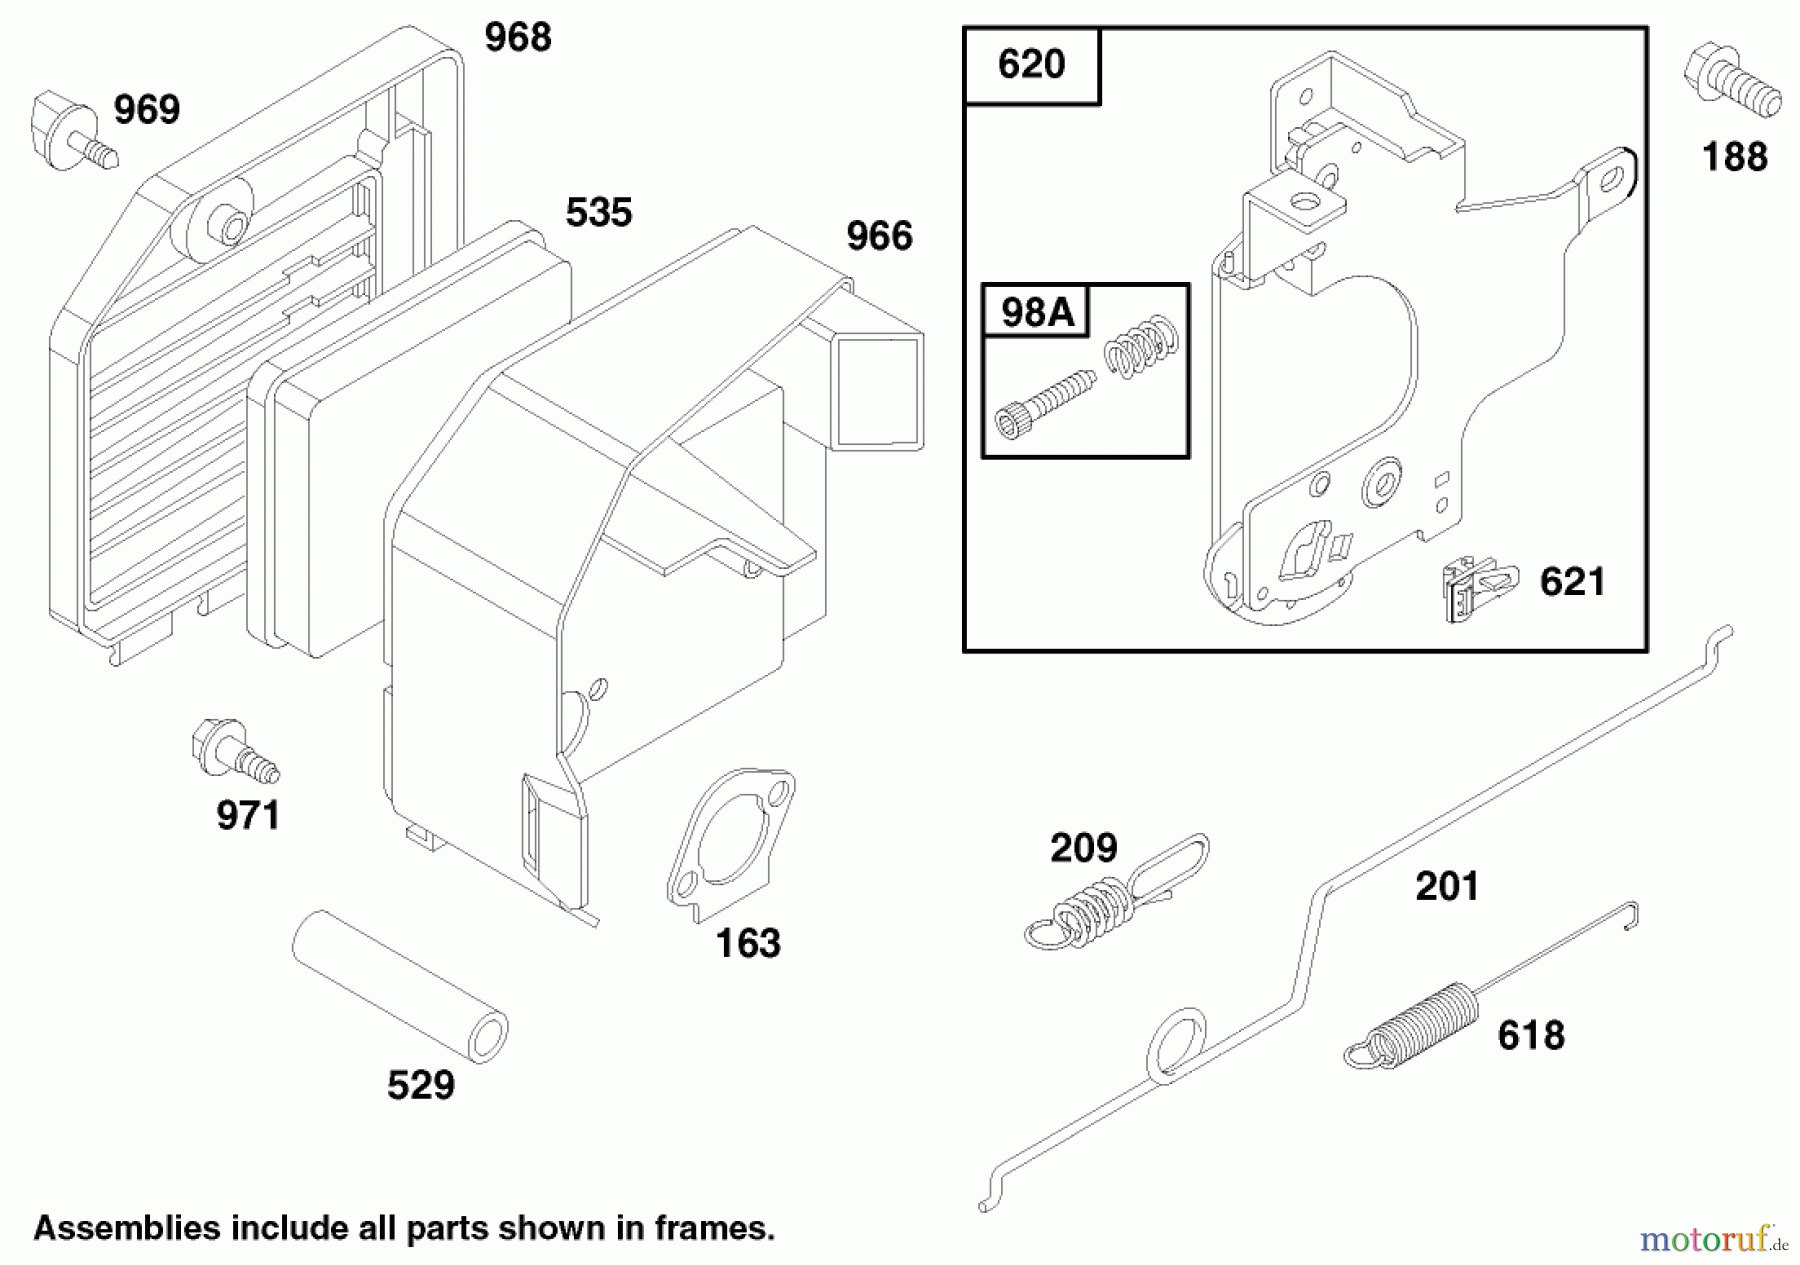  Toro Neu Mowers, Walk-Behind Seite 1 20482 - Toro Super Recycler Mower, 1997 (790000001-799999999) ENGINE GTS 150 (MODEL NO 20482 ONLY)